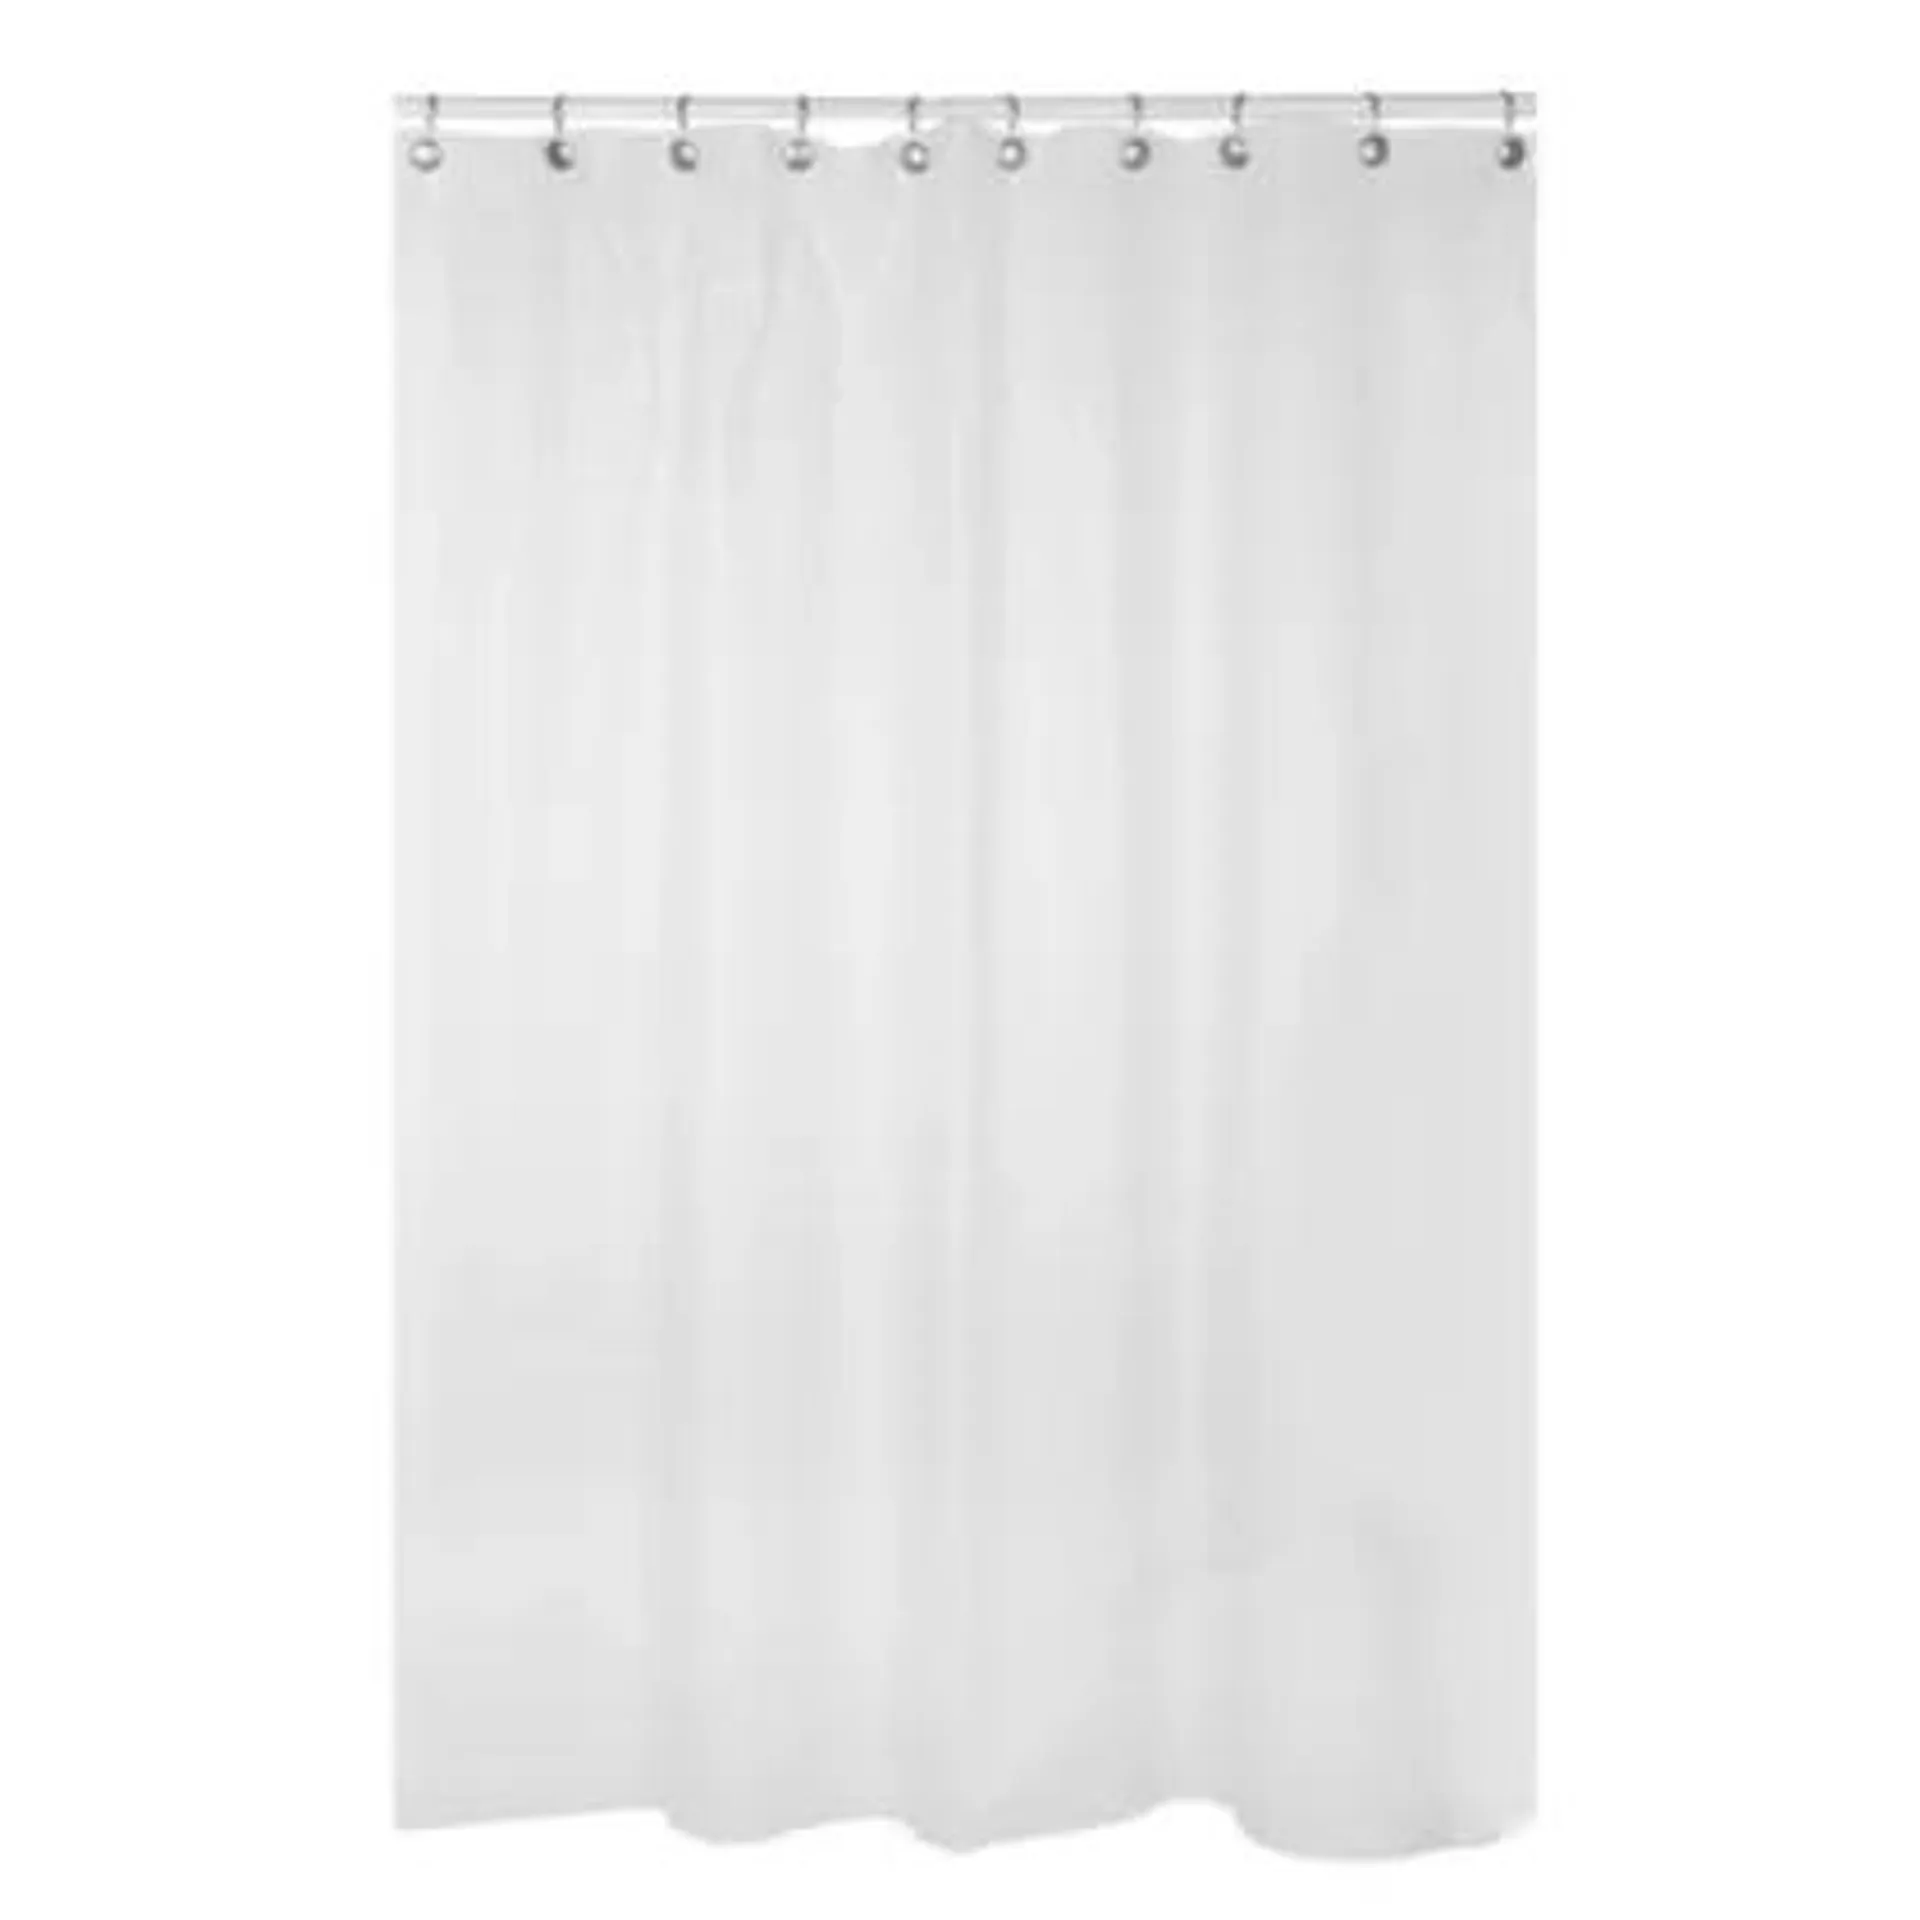 Protector para cortina de baño 180 x 180 cm blanco